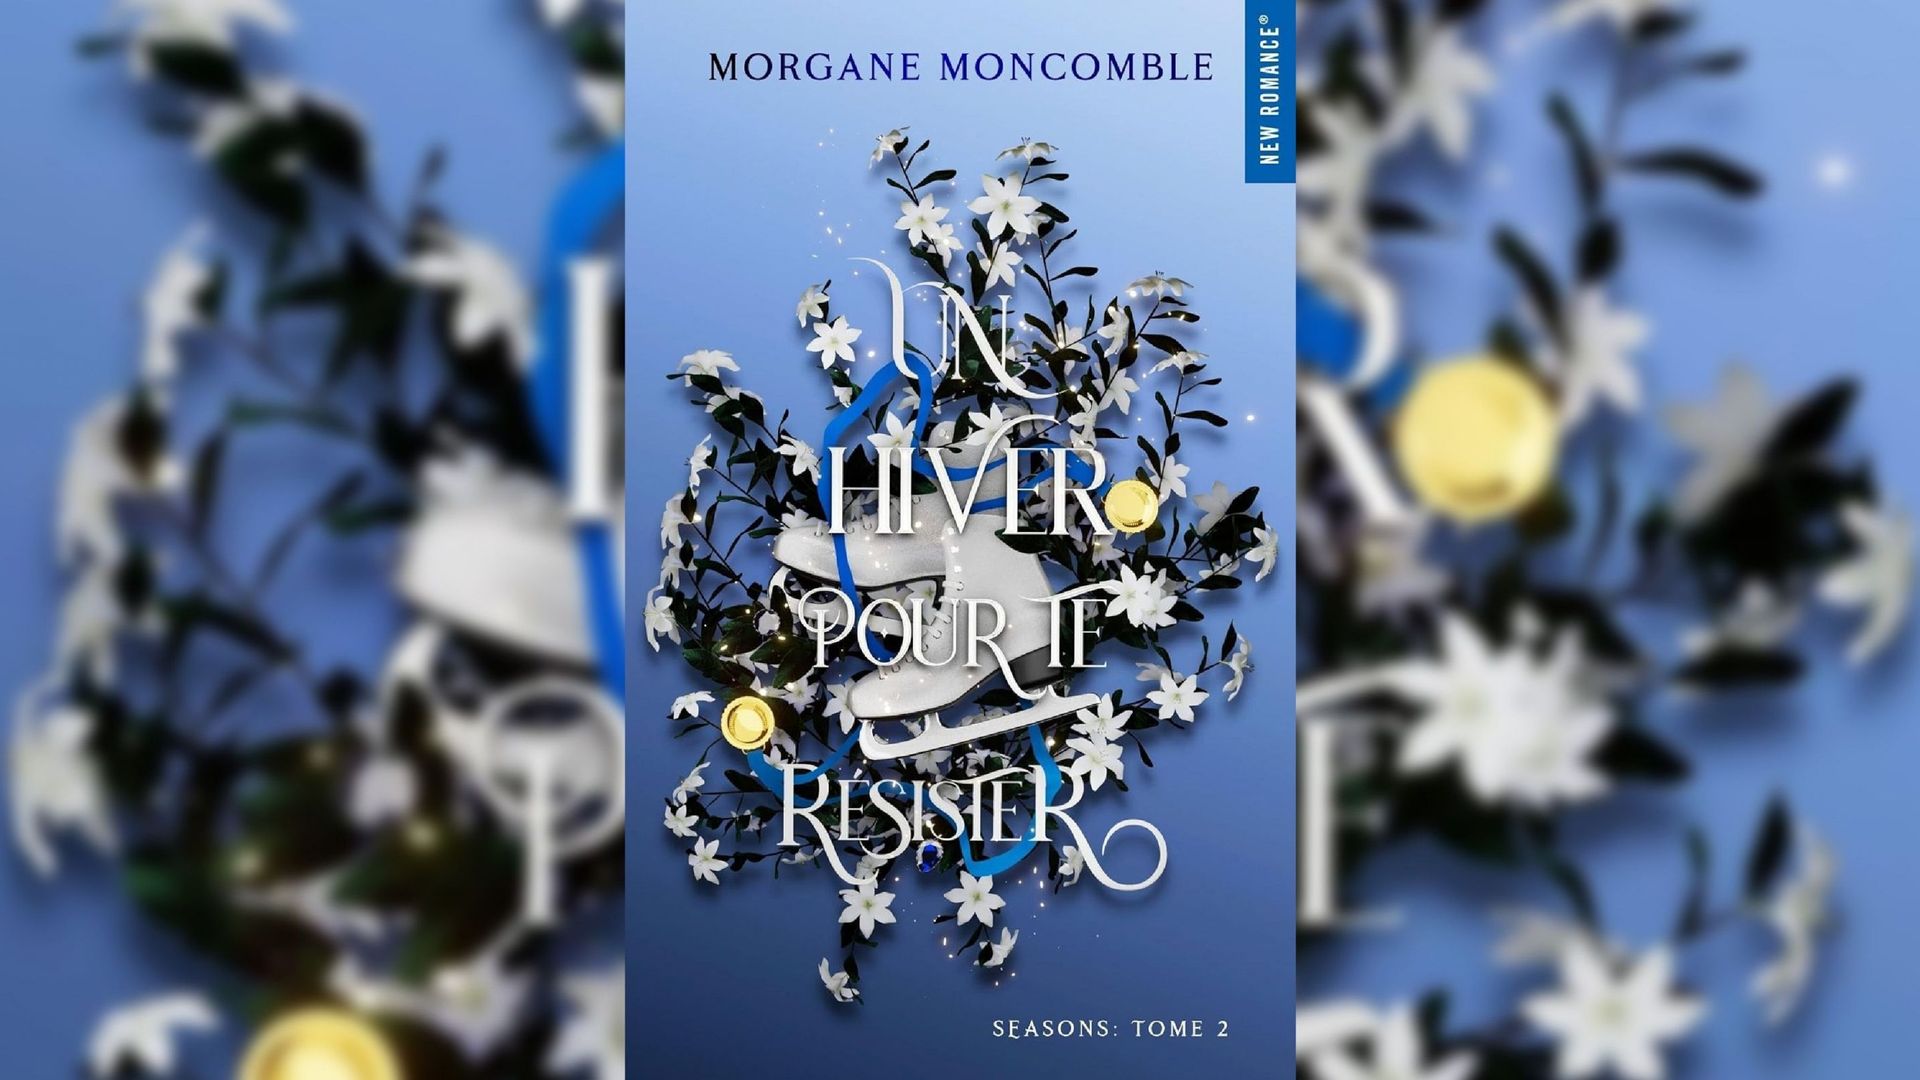 New romance : Morgan Moncomble nous habille pour l'hiver